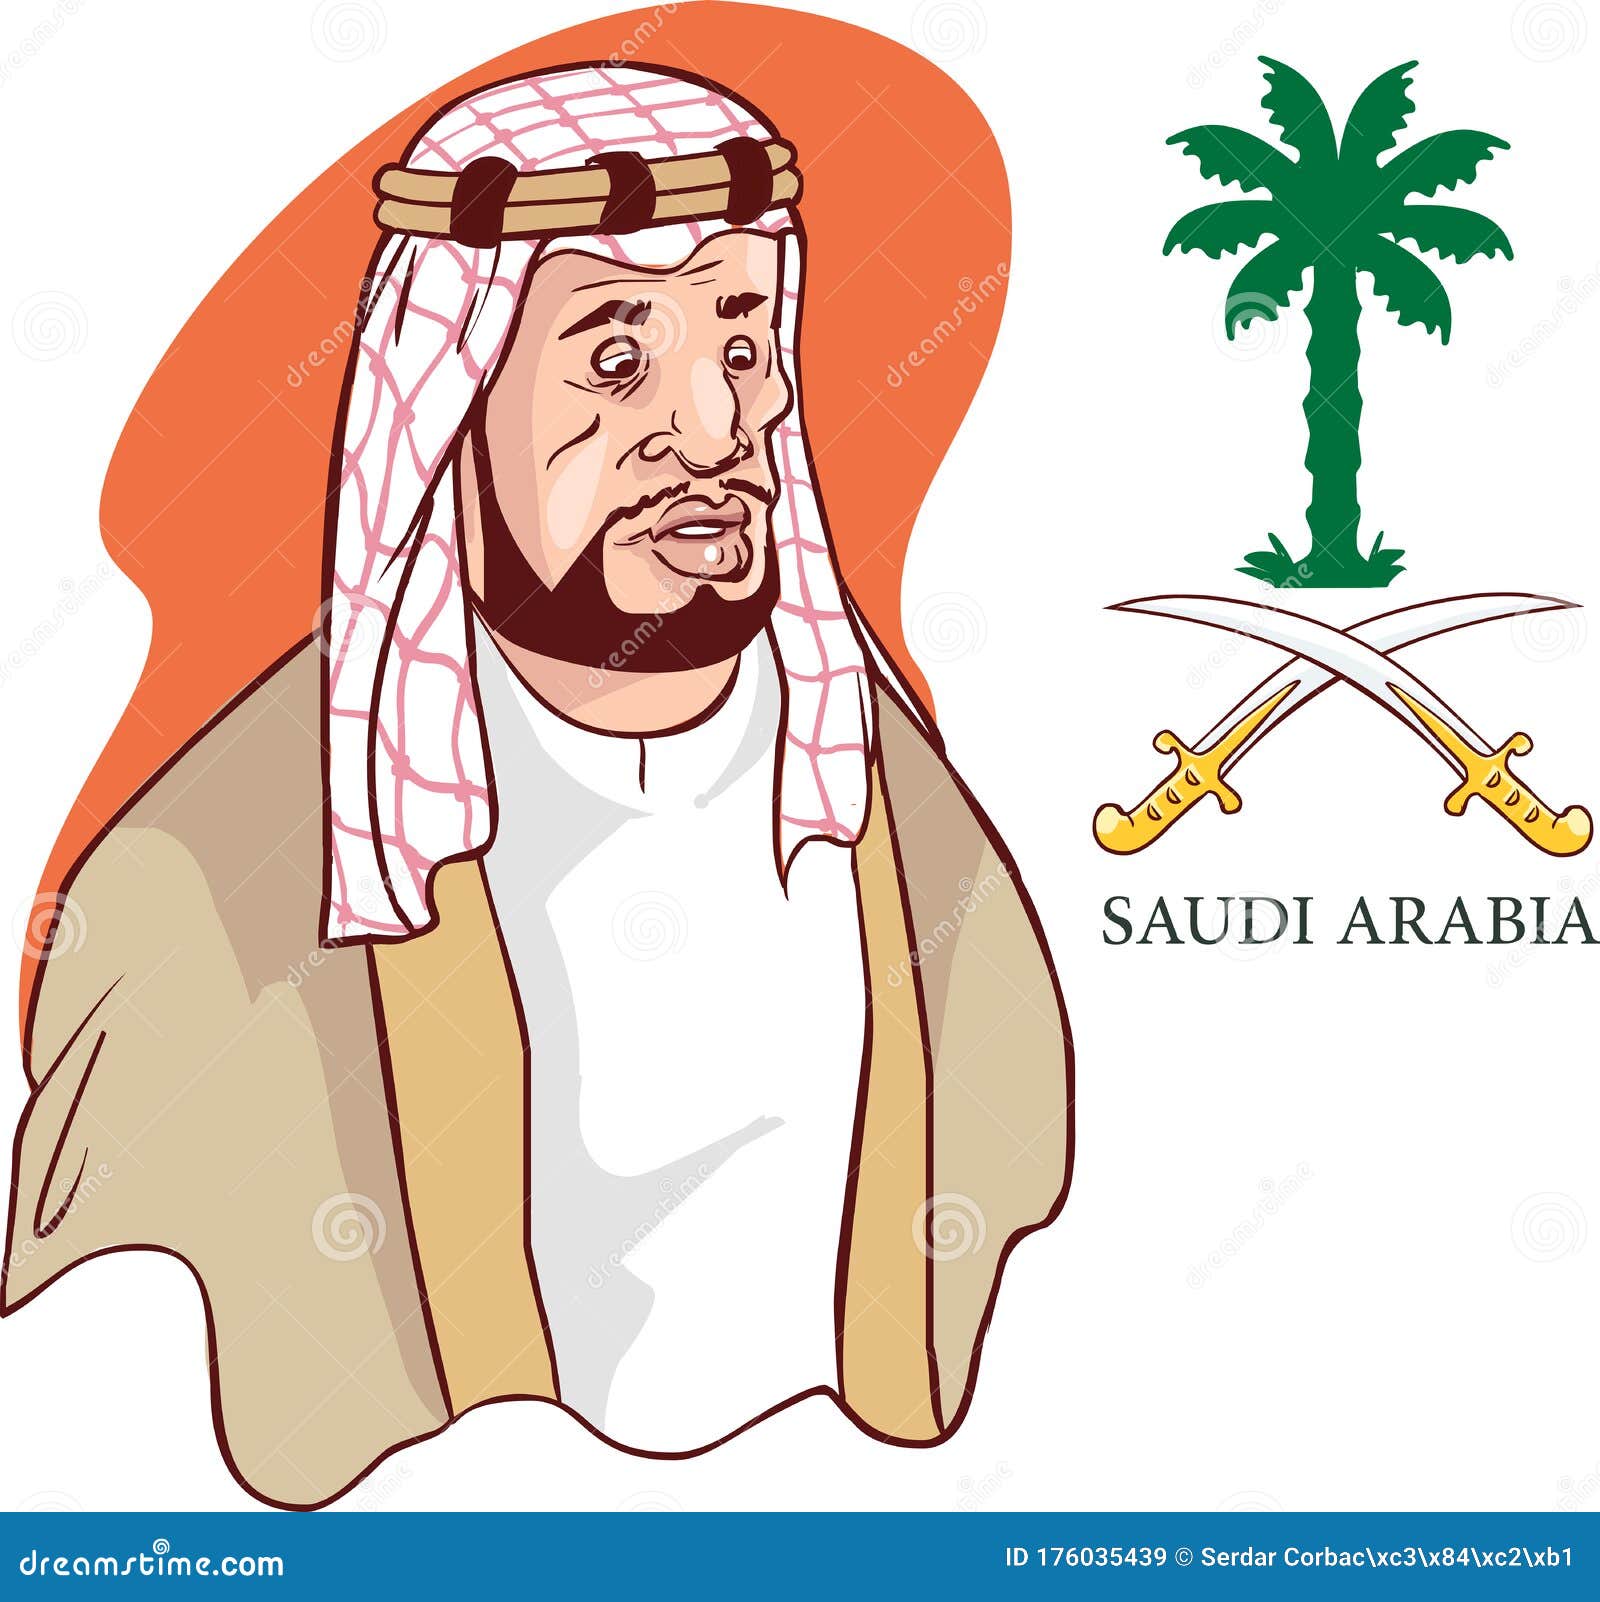 Saudi Arab Man Cartoon Character Vector Ä°llustration Stock Vector -  Illustration of eastern, face: 176035439